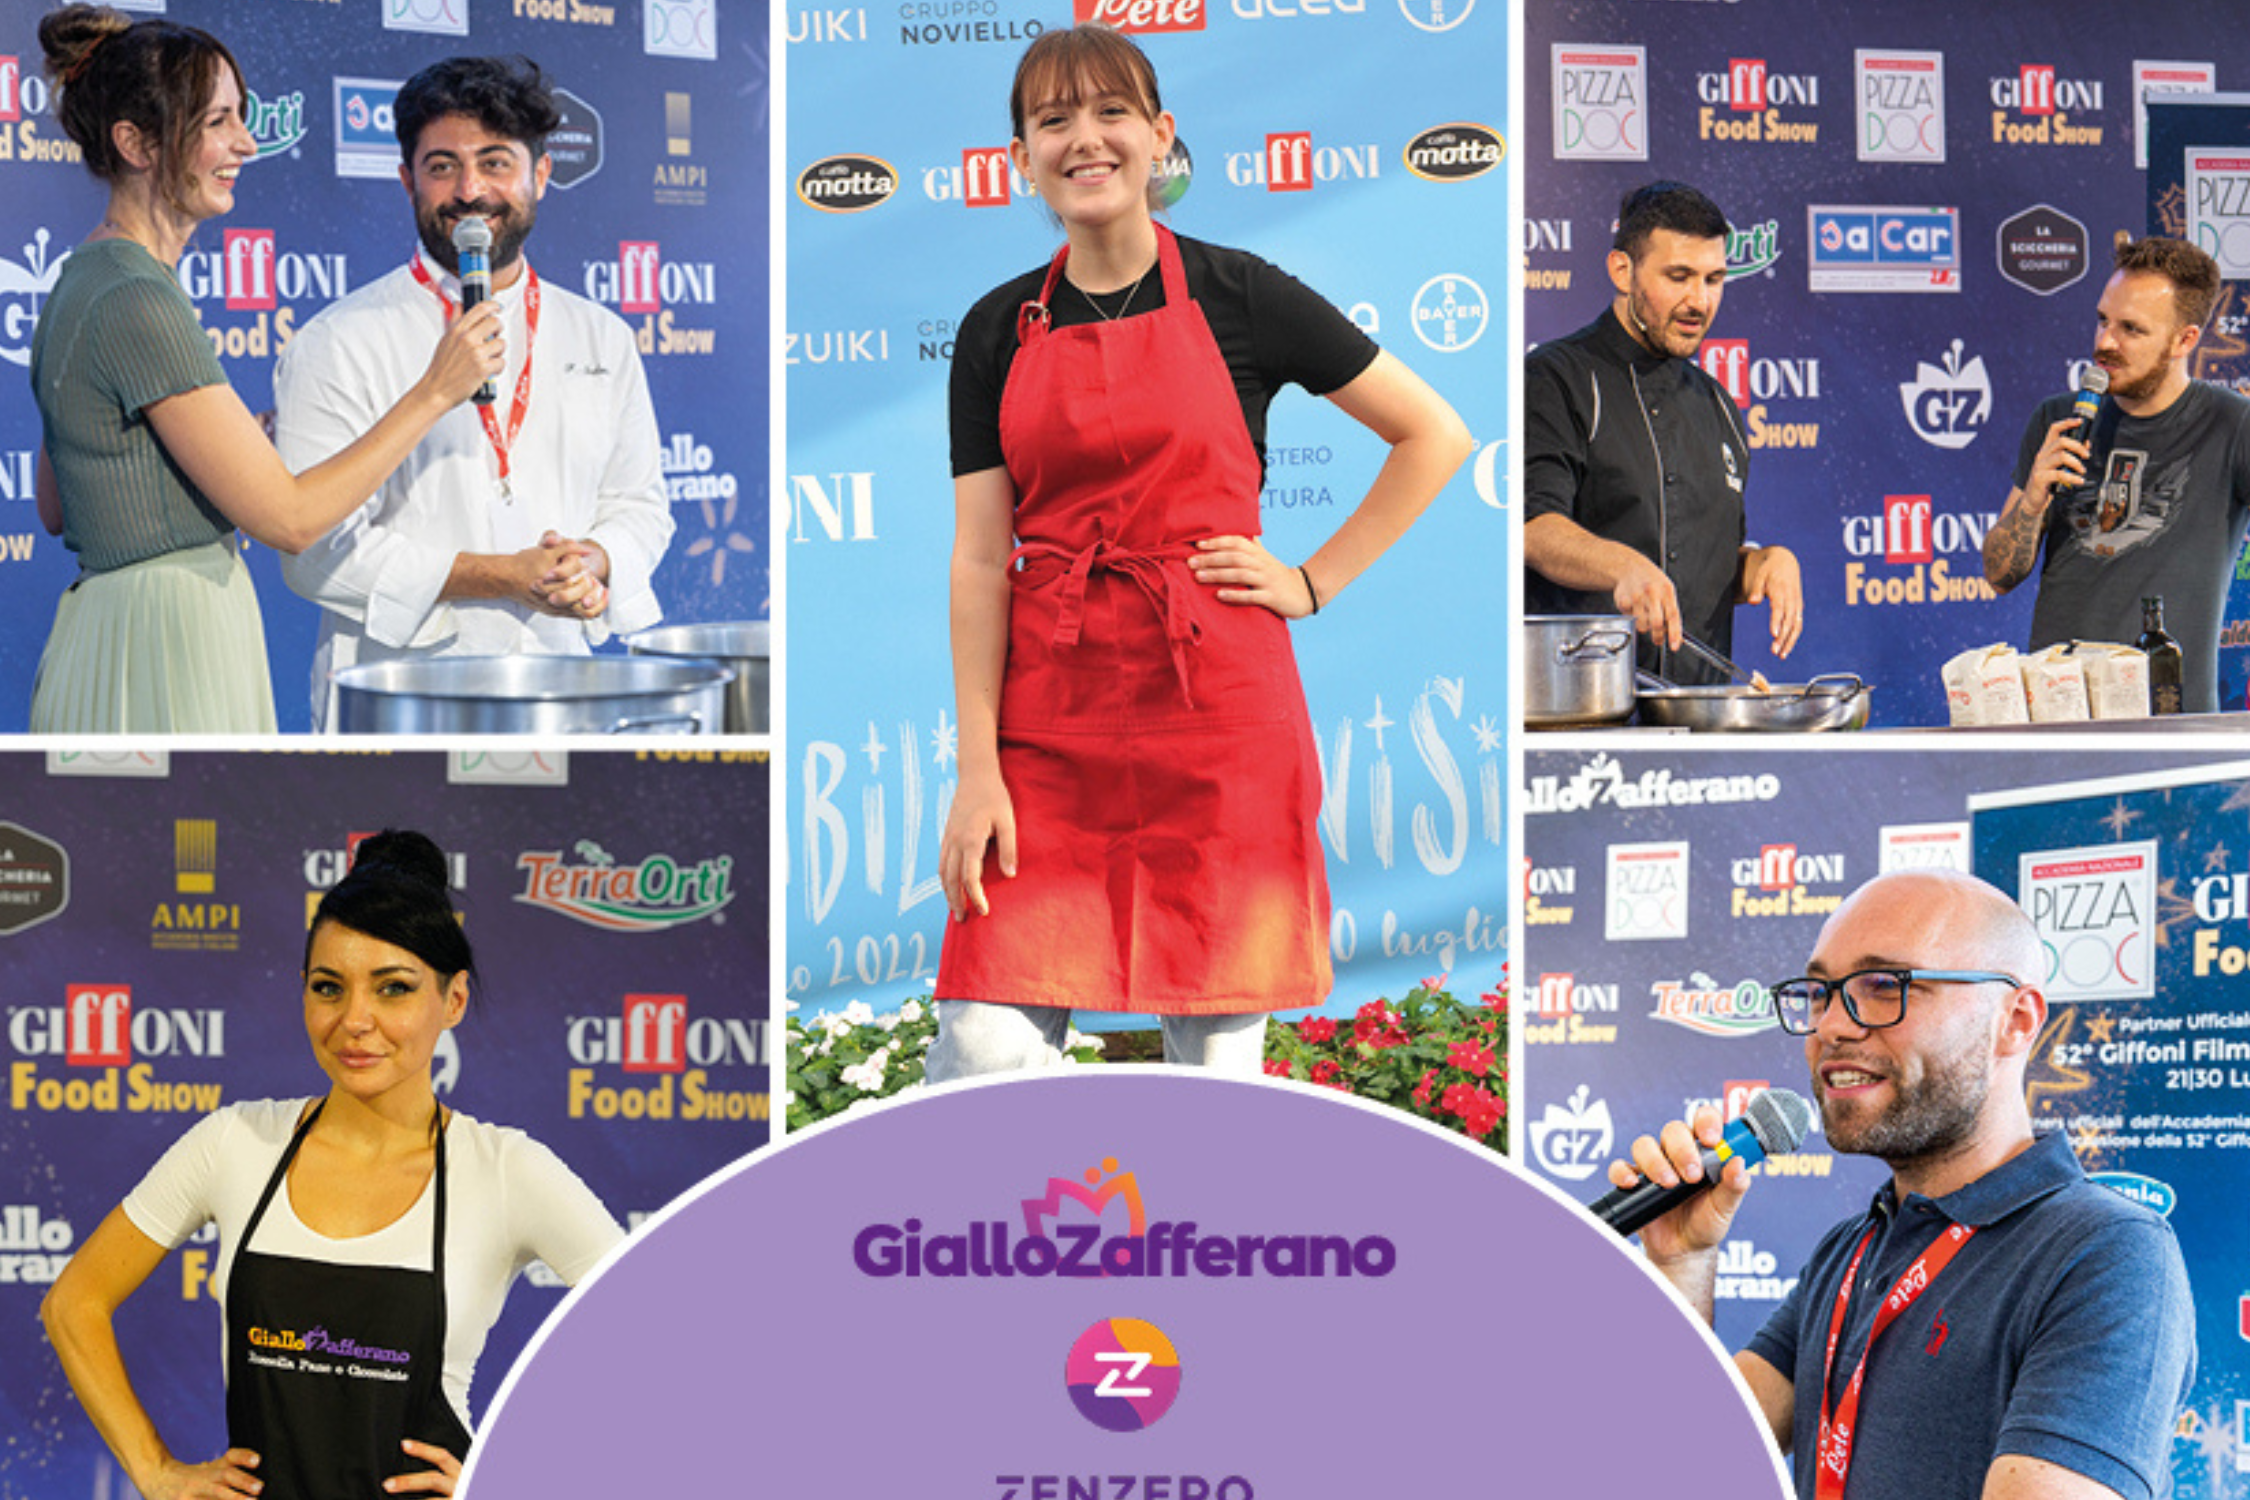 Giffoni e Giallozafferano: si rinnova la partnership che racconta le eccellenze e i talenti del food